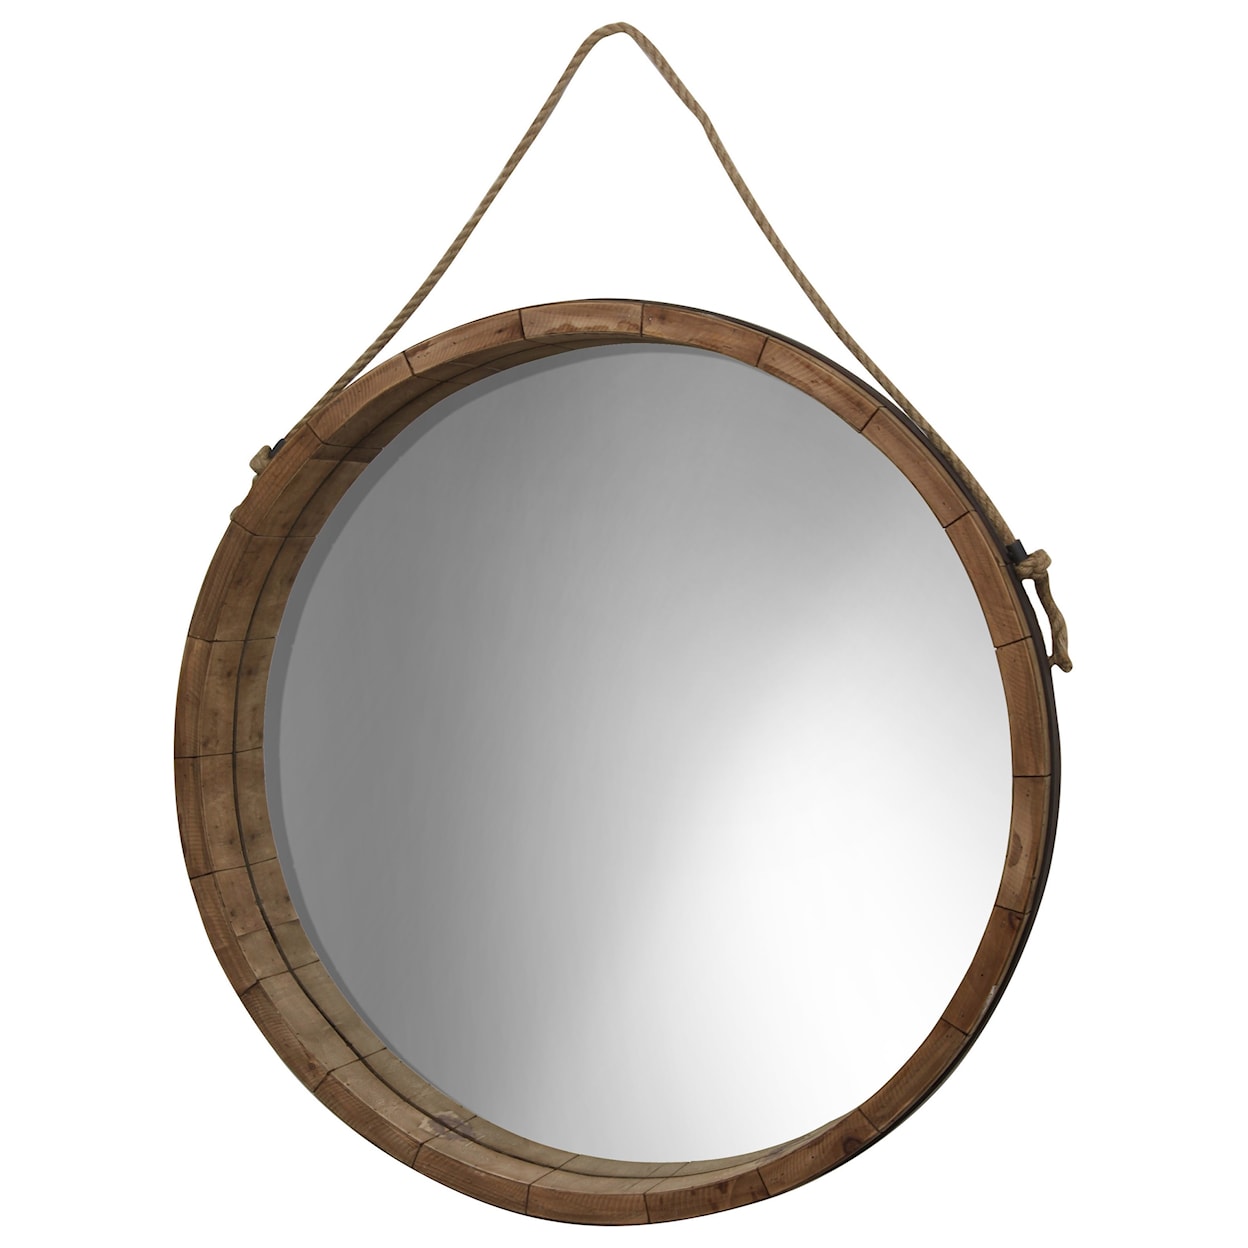 StyleCraft Mirrors Round Wood Barrel Mirror